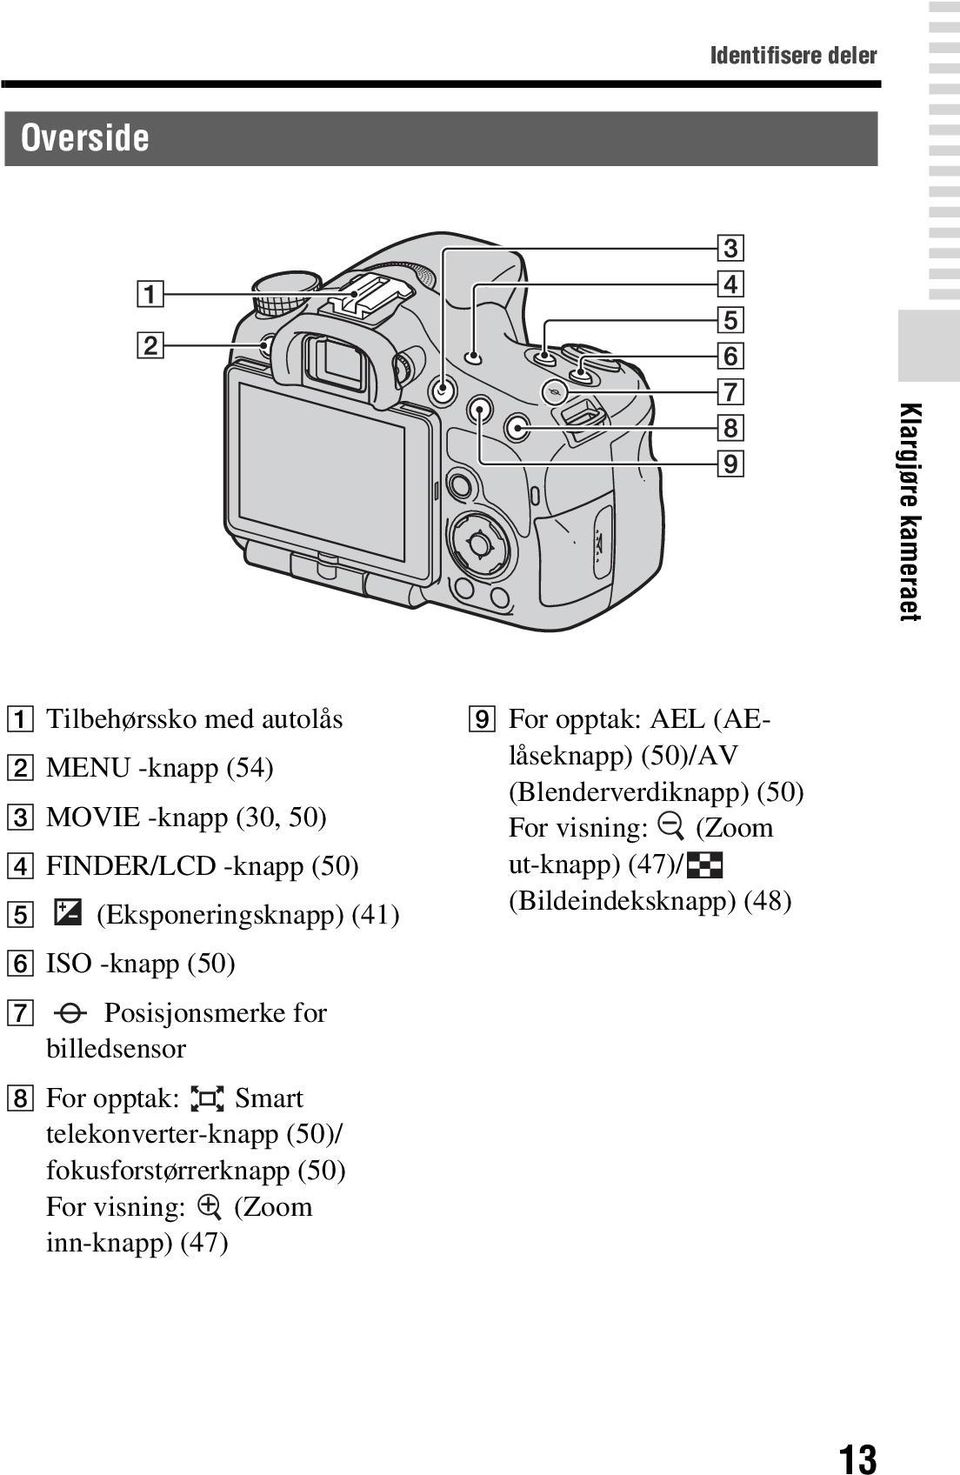 opptak: Smart telekonverter-knapp (50)/ fokusforstørrerknapp (50) For visning: (Zoom inn-knapp) (47) I For